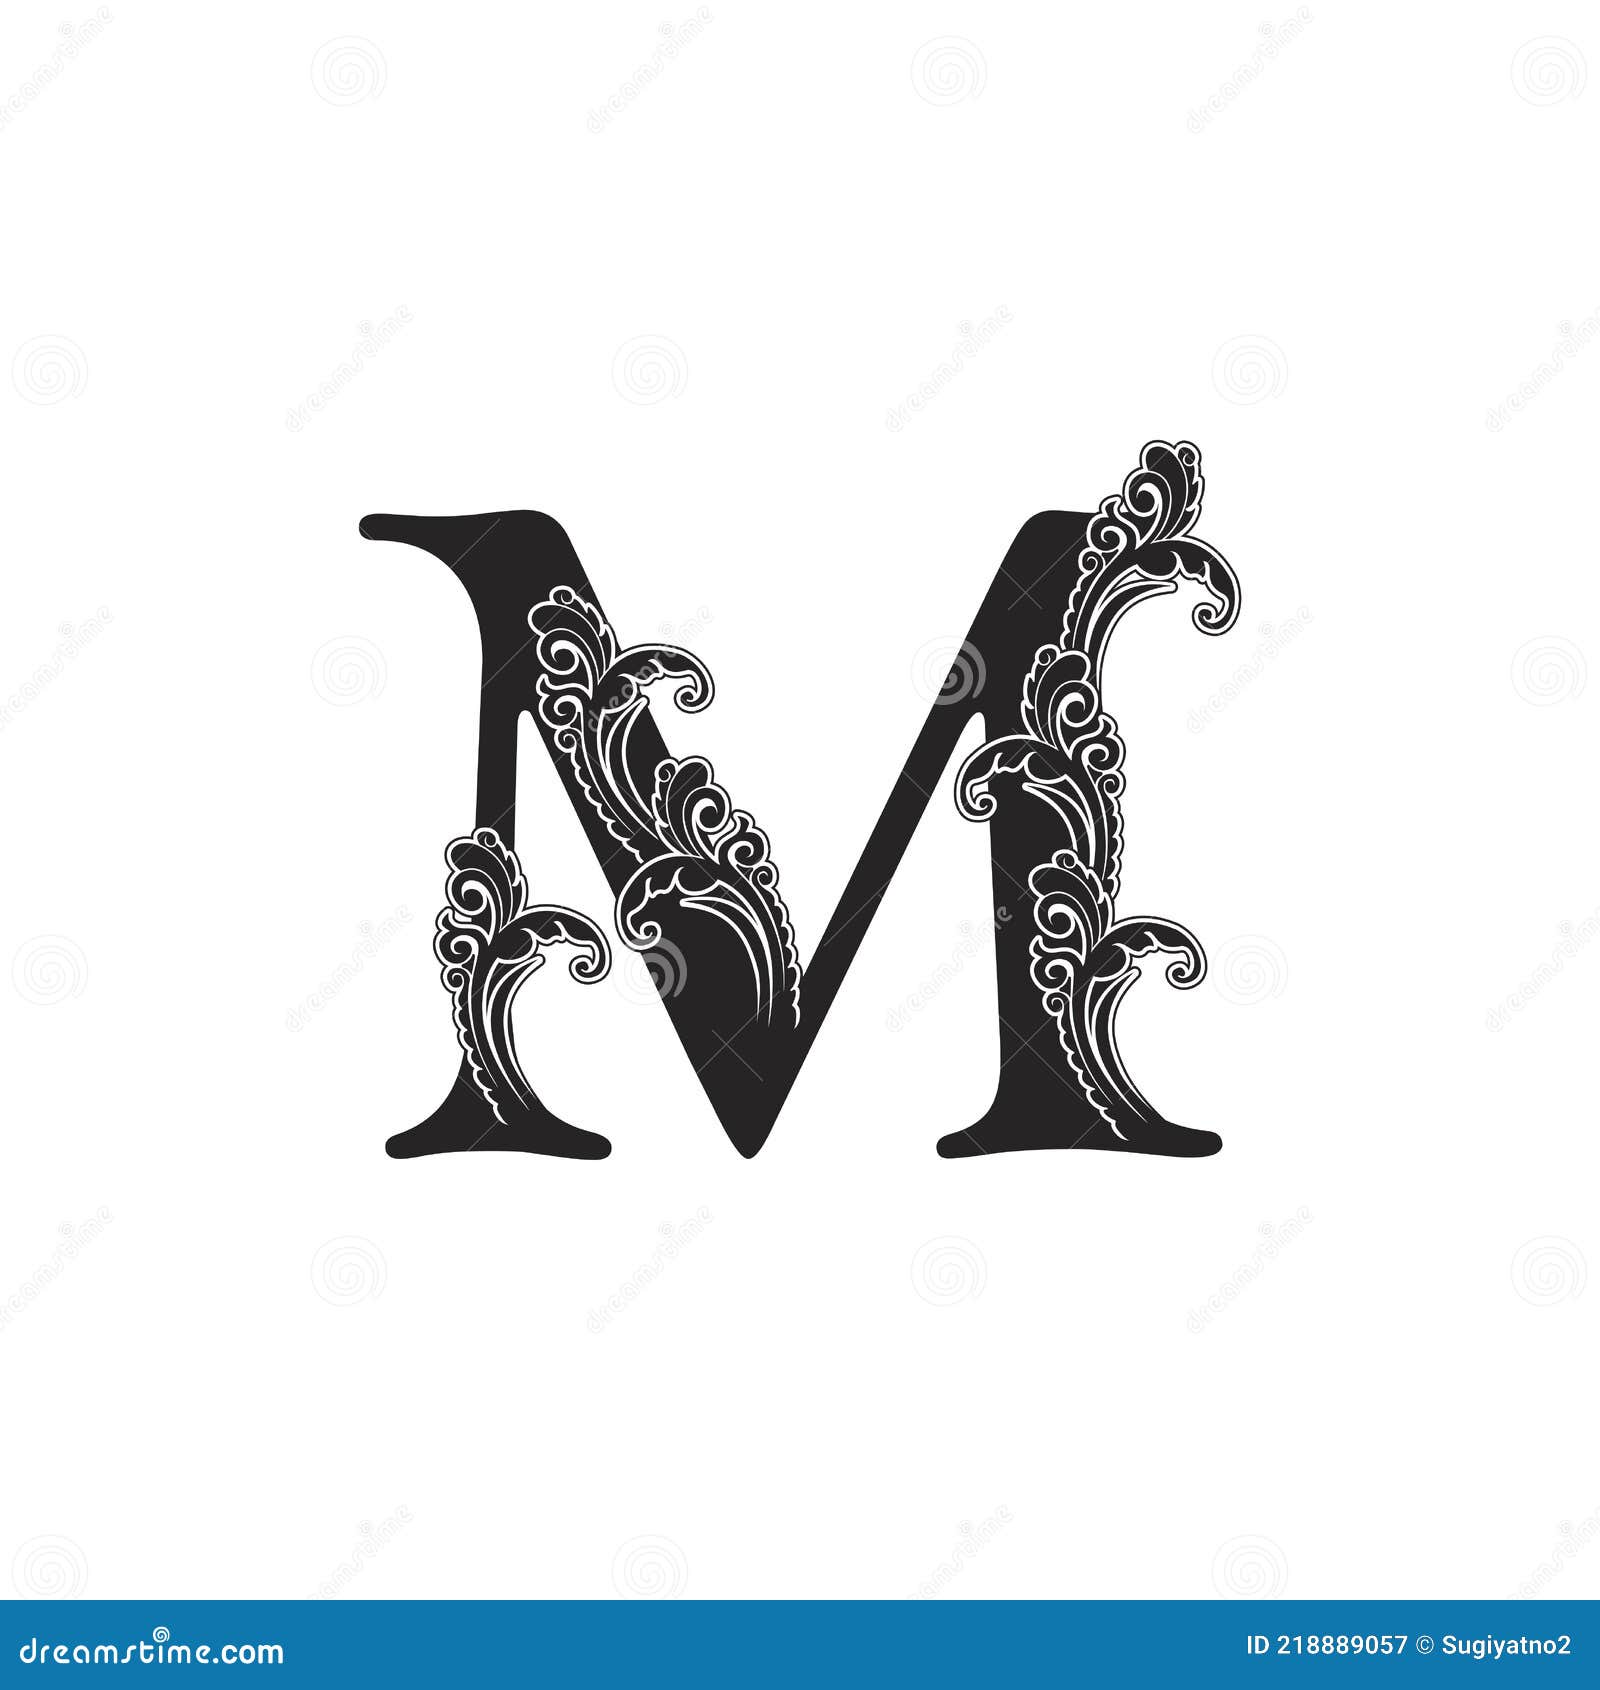 Elegant letter M logo monogram design. Luxury black and white